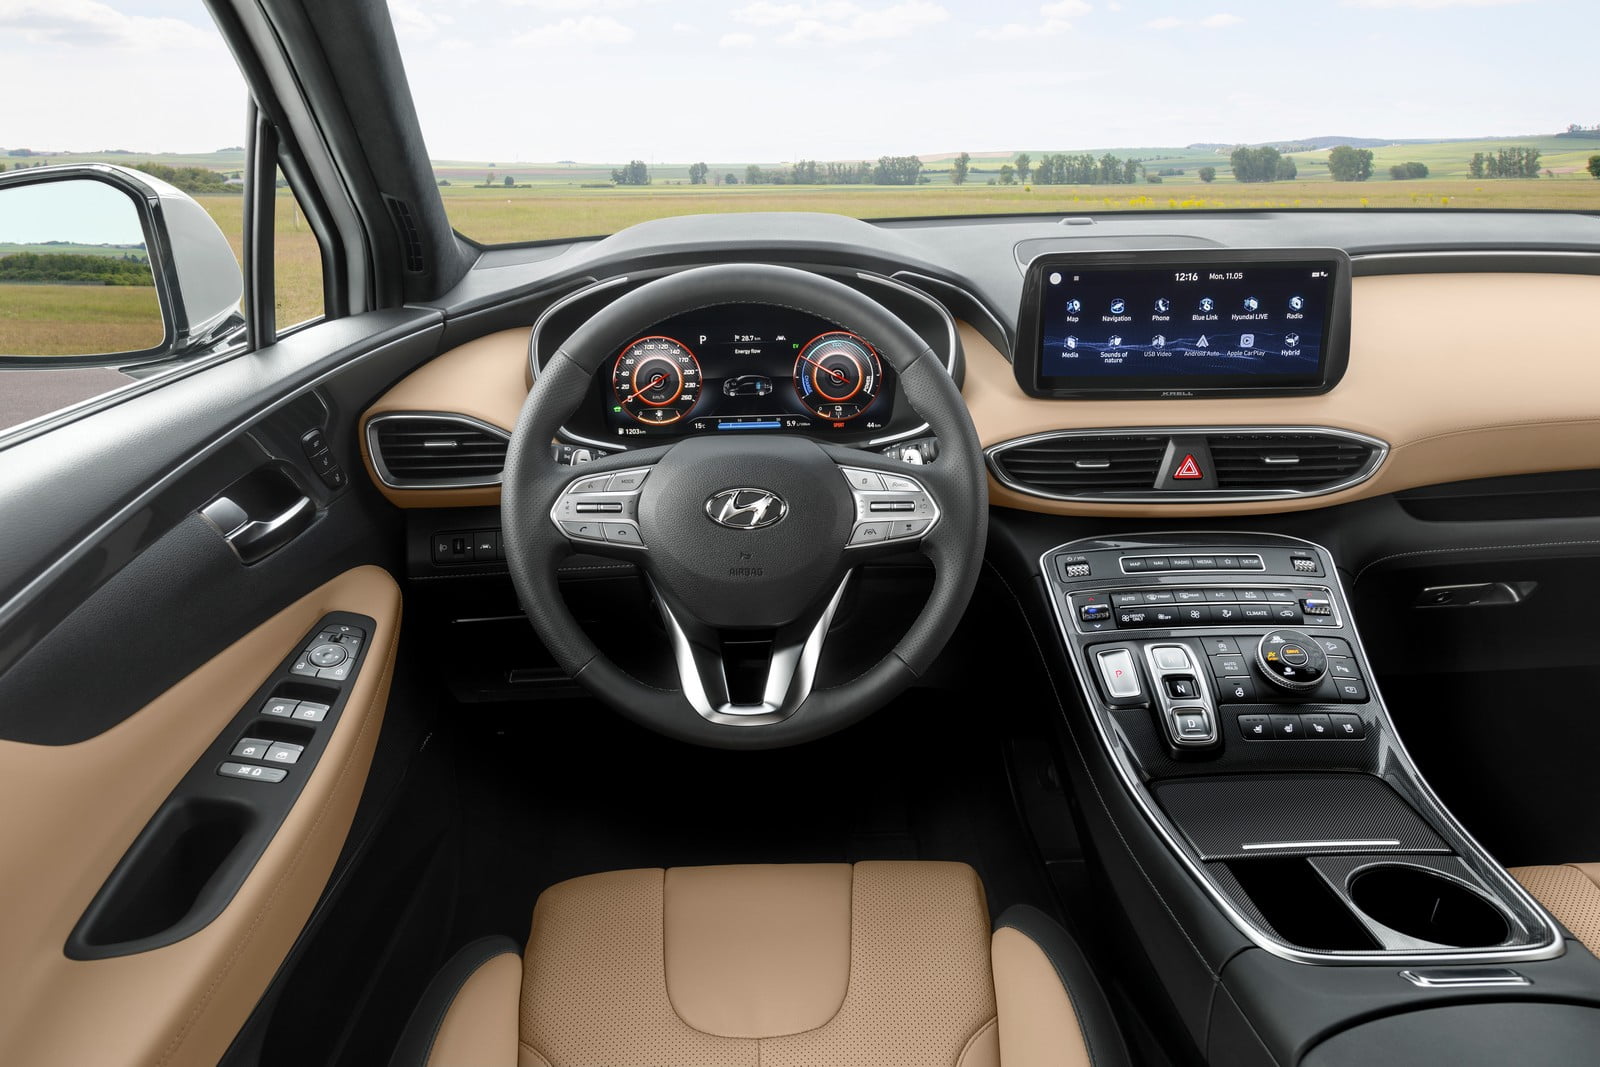 Nuova Hyundai Santa Fe prezzo, interni, motore, opinioni [VIDEO]